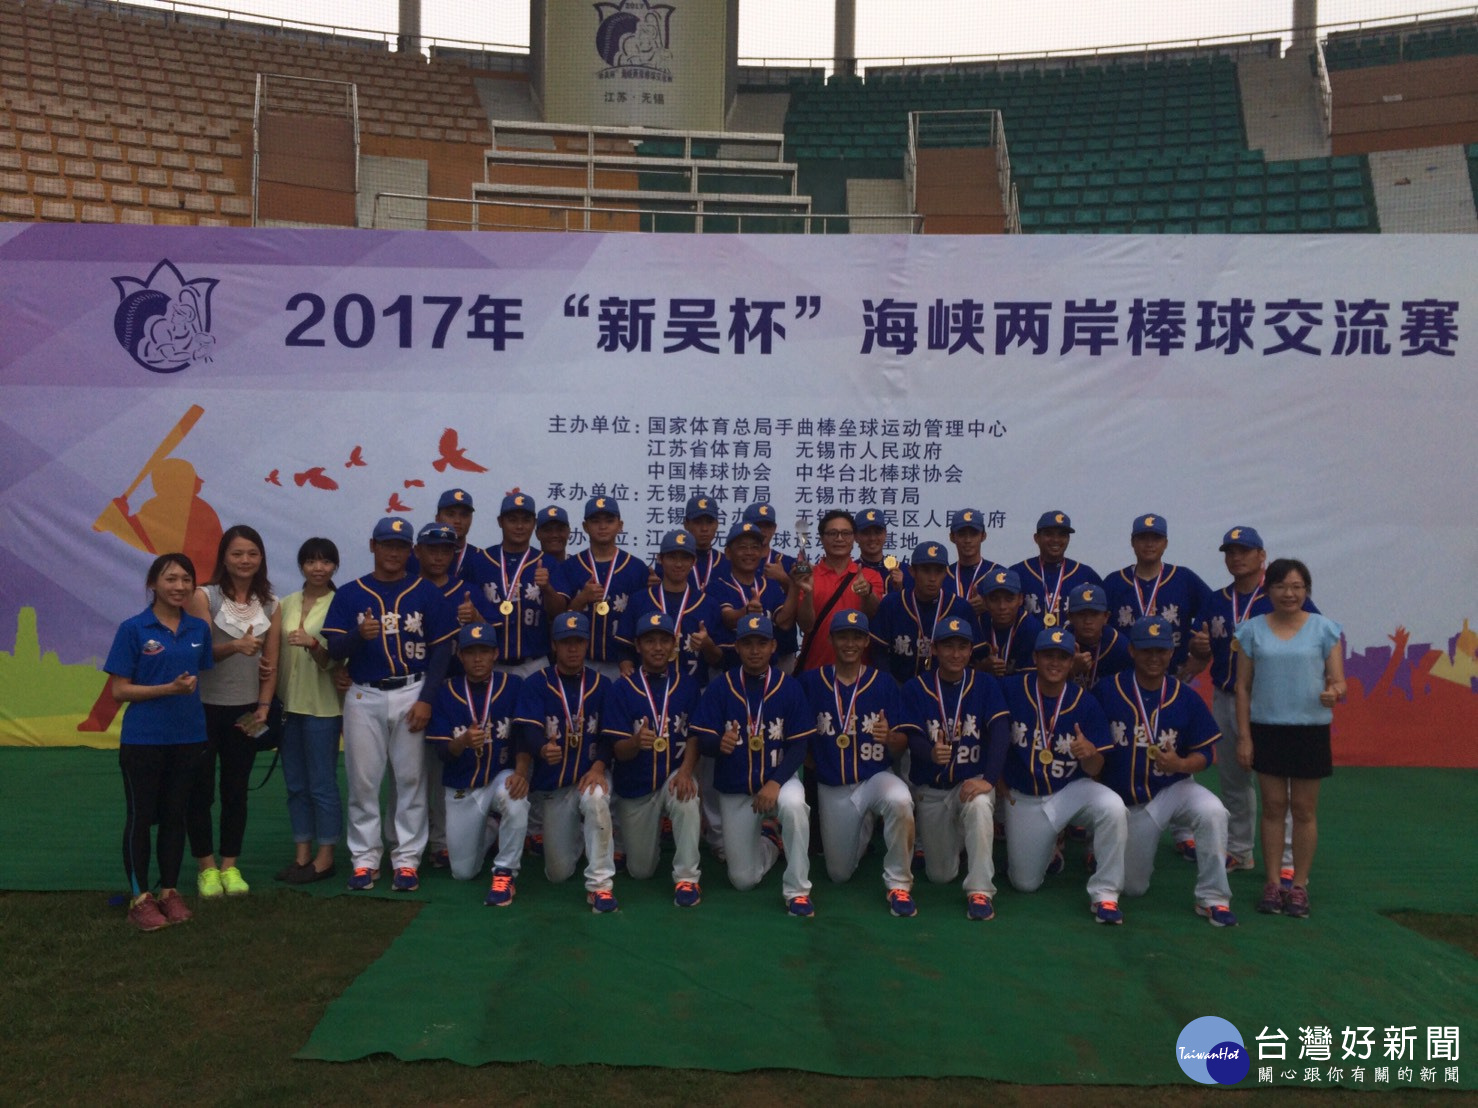 桃園航空城棒球隊參加「2017新吳杯海峽兩岸棒球賽」勇奪冠軍。